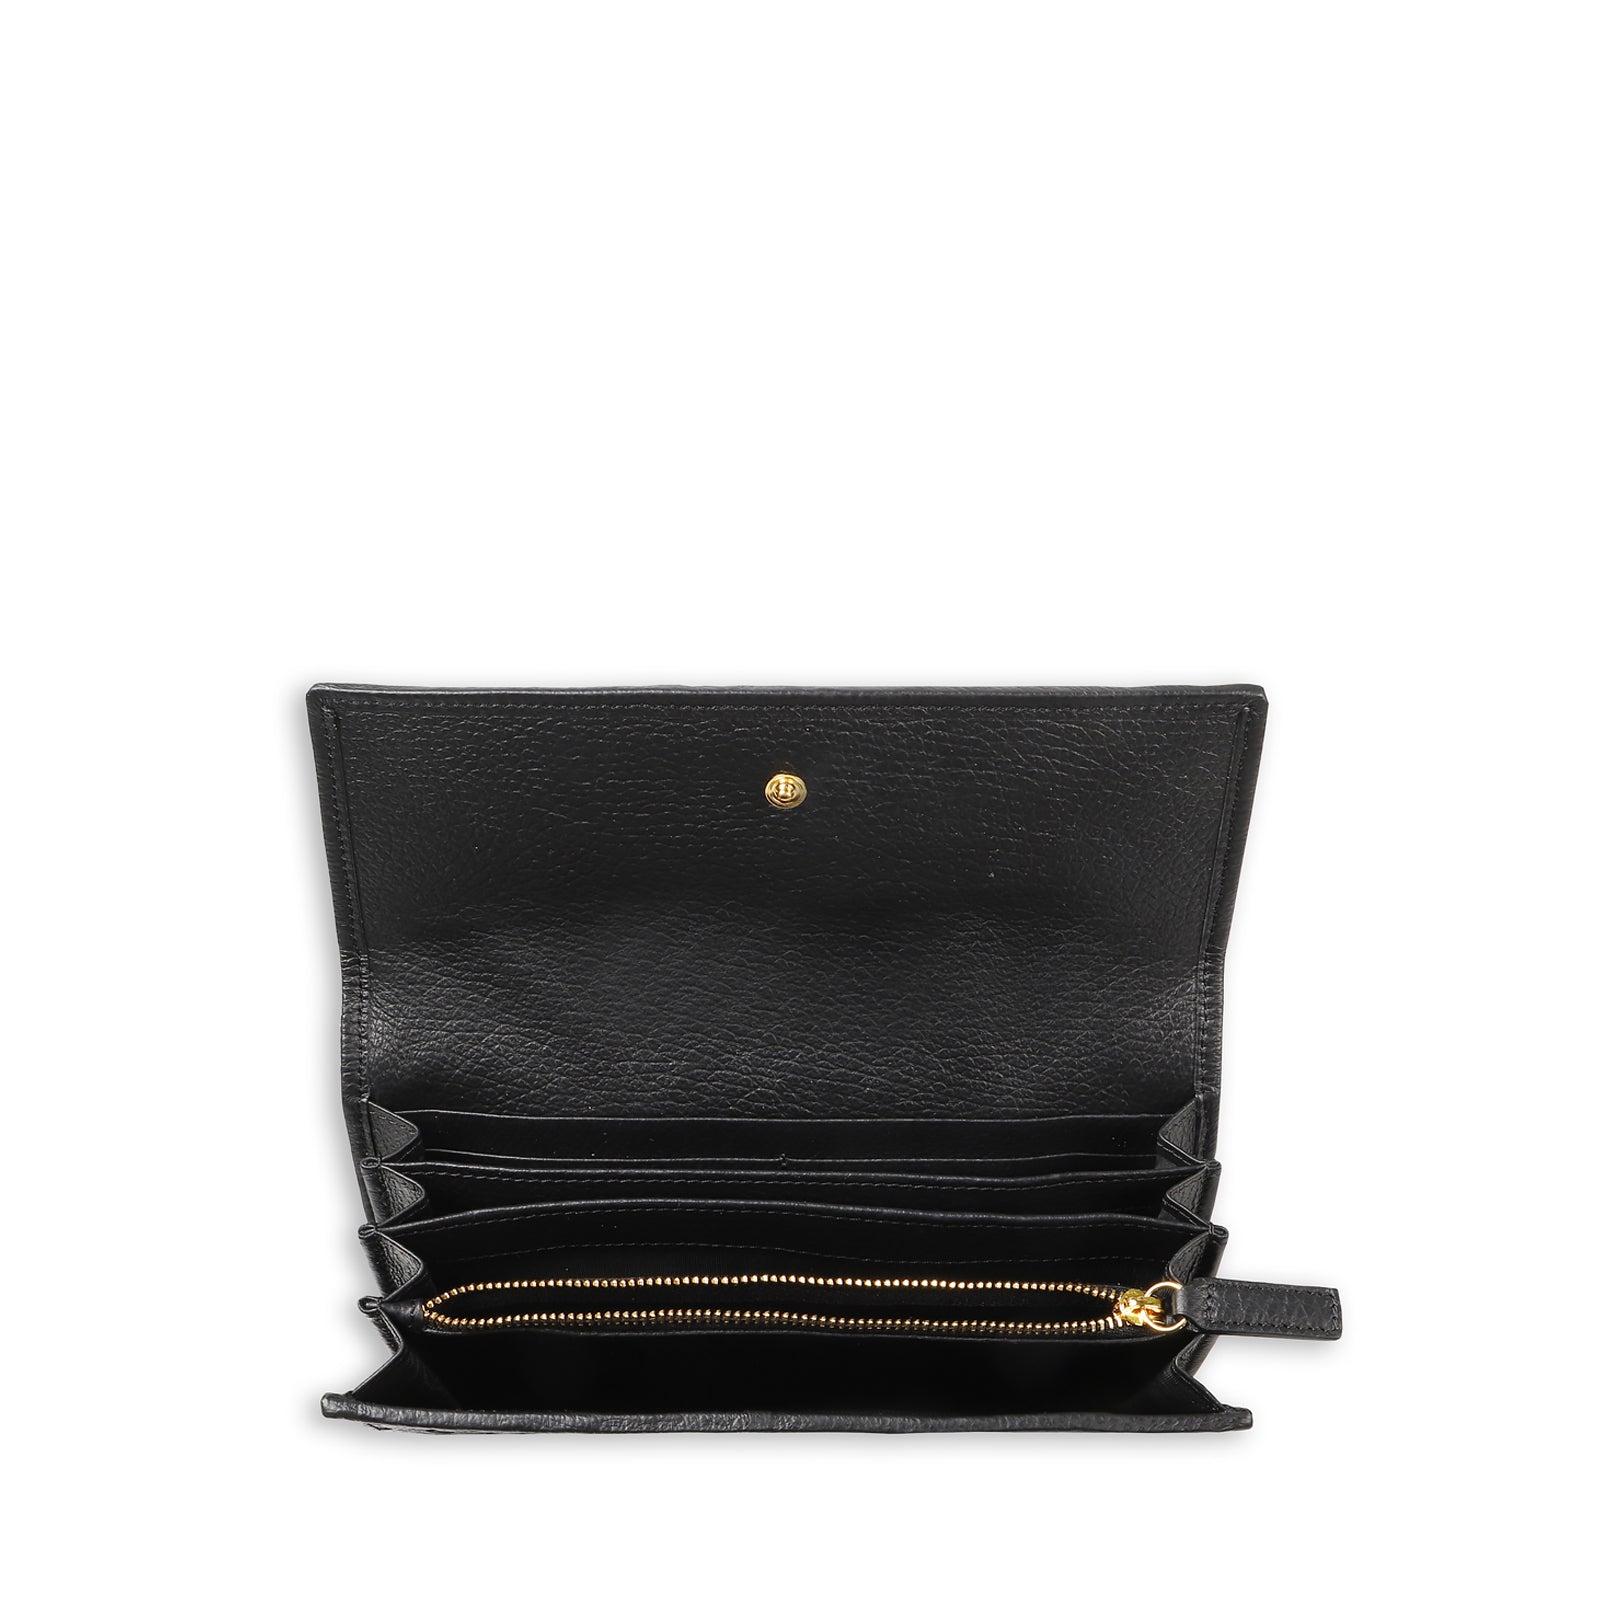 Jeanne leather wallet